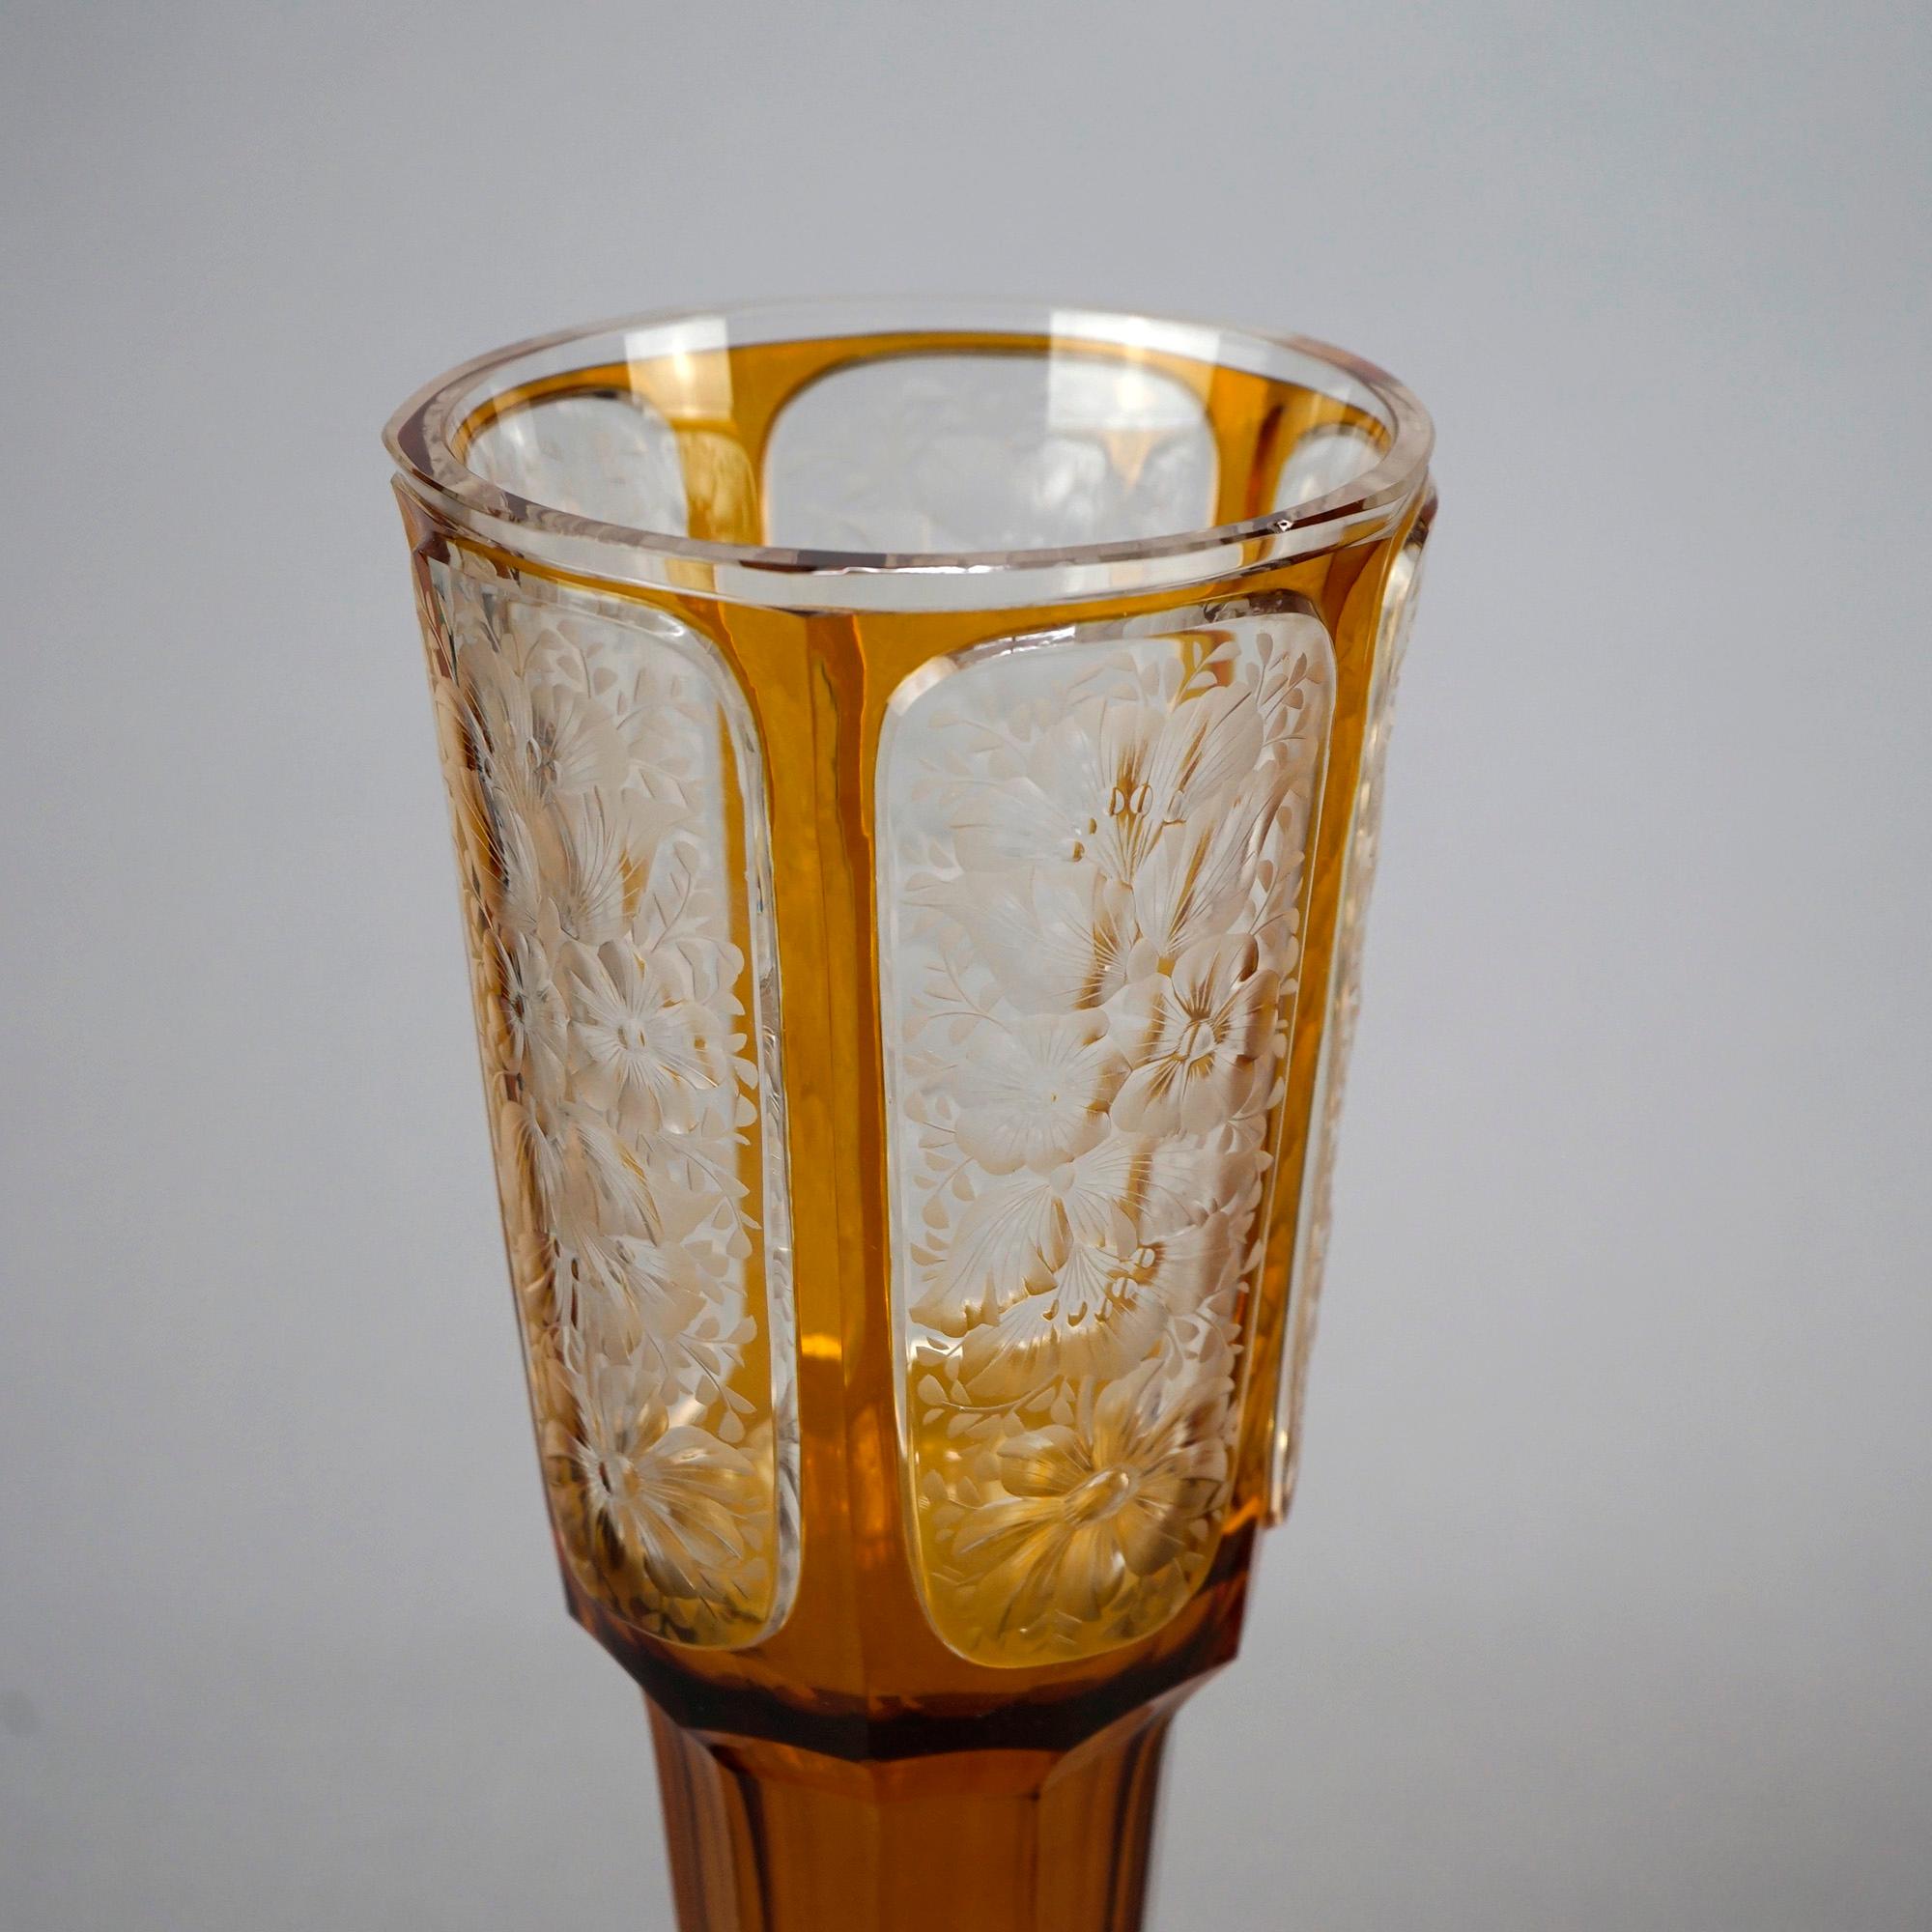 Paire de vases de Bohème surdimensionnés et anciens, de la manière de Moser, offrant une construction en verre d'art avec des vaisseaux ambrés évasés ayant des panneaux découpés et transparents avec des motifs floraux gravés, reposant sur des bases